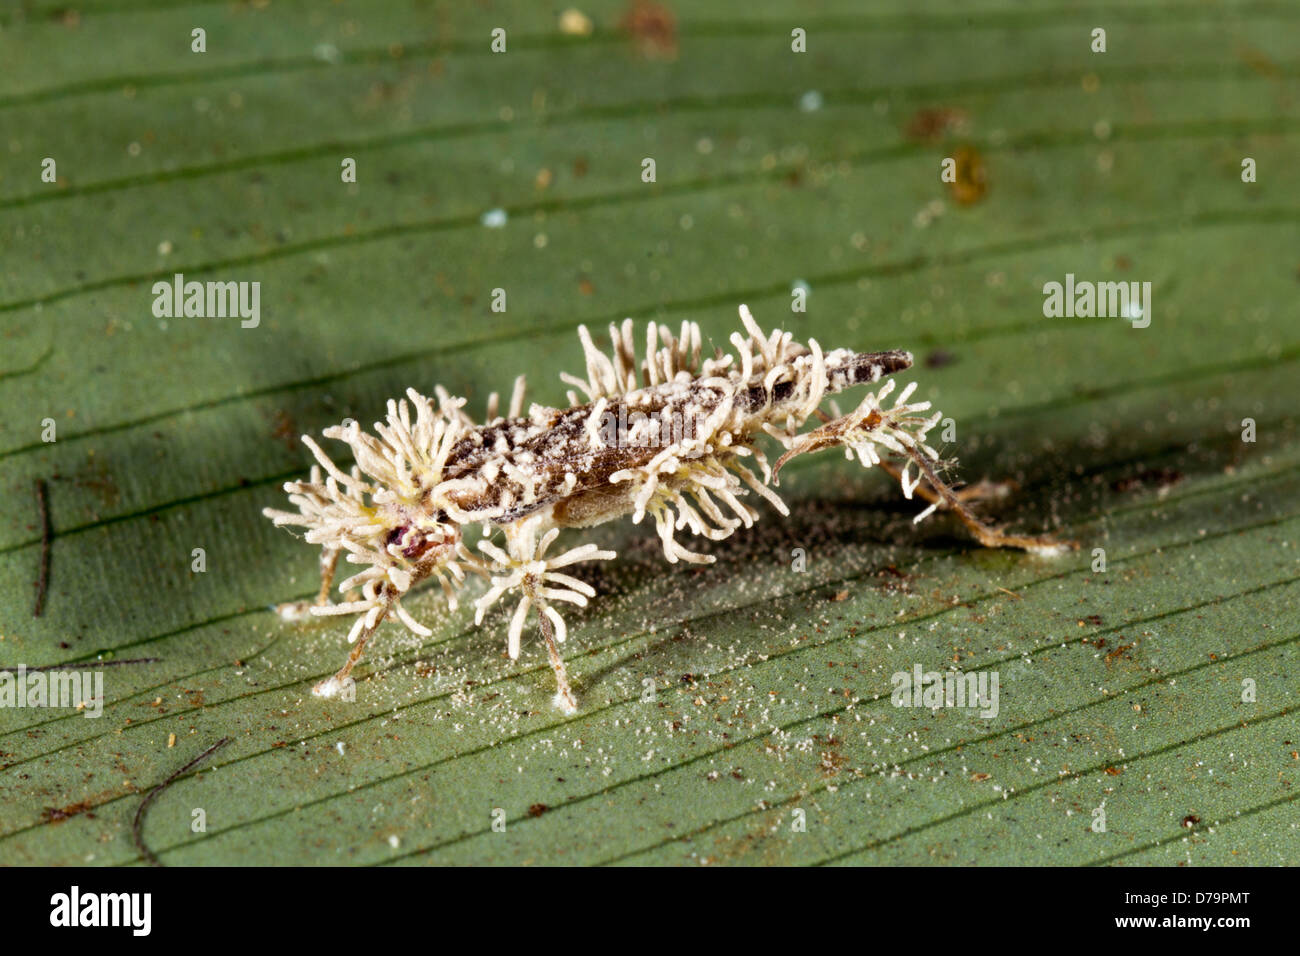 Cricket infectado con un hongo Cordyceps en la selva, Ecuador Foto de stock